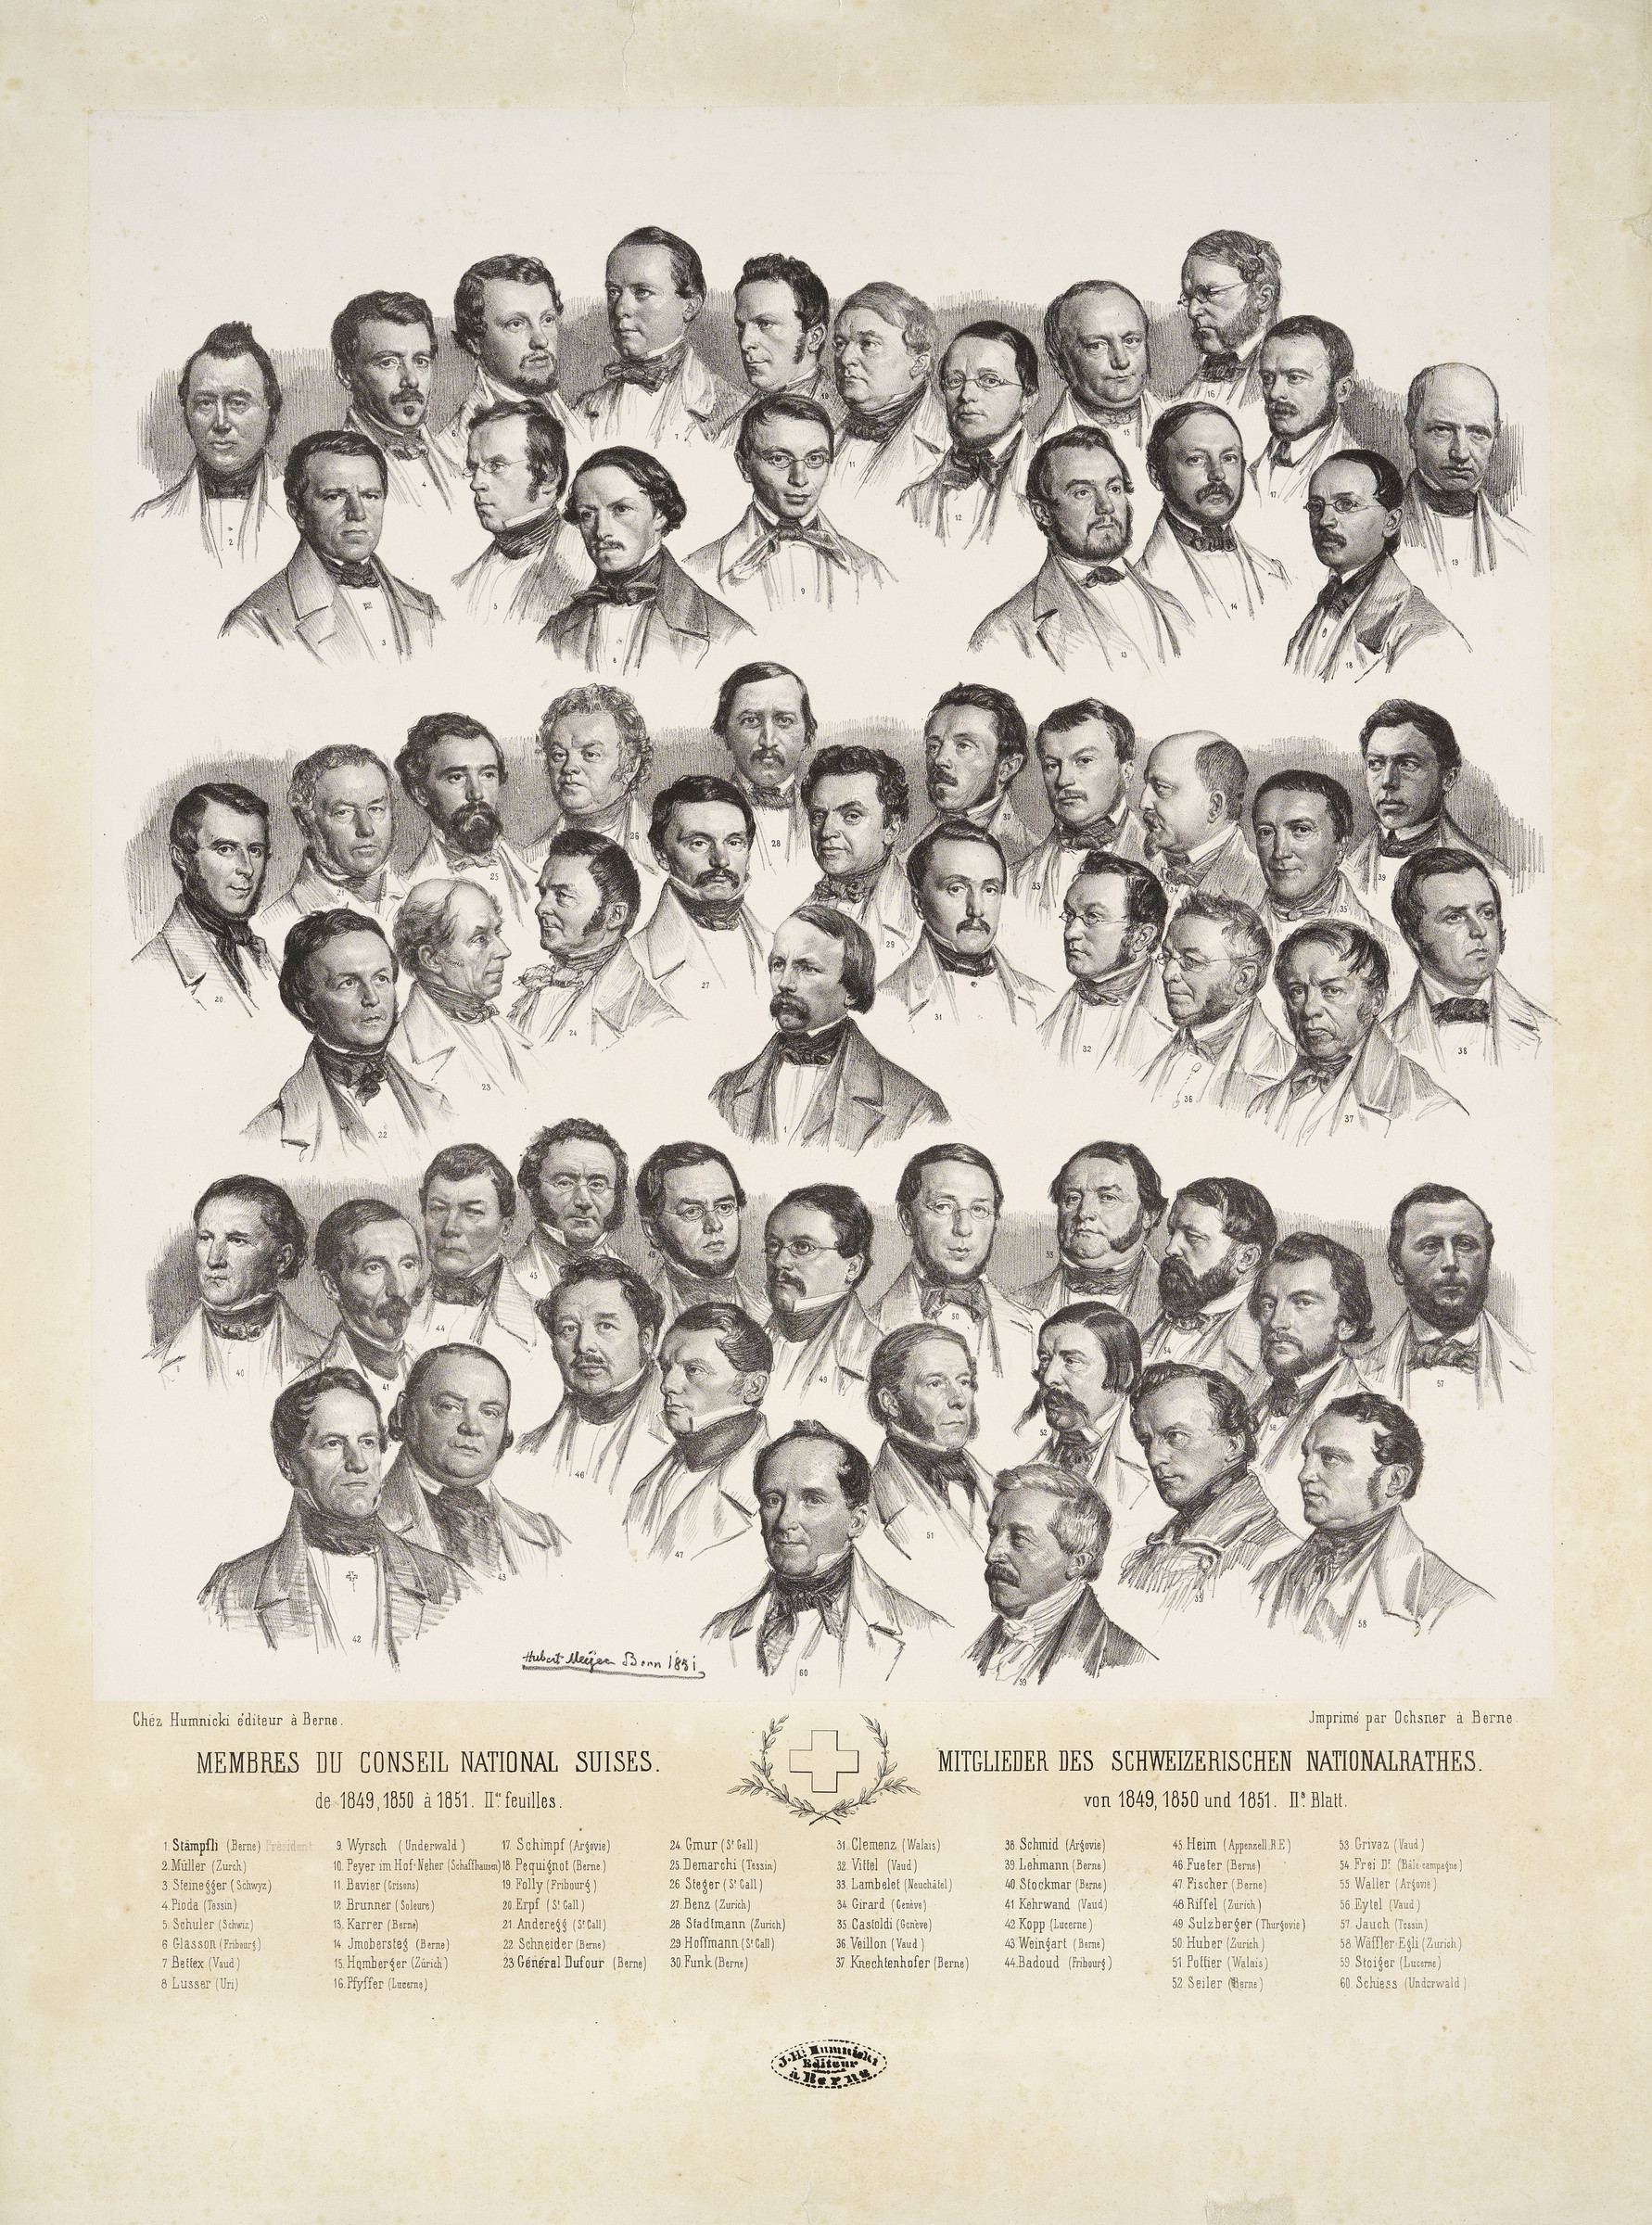 Sammelporträt des Schweizerischen Nationalrates, 1849-1851